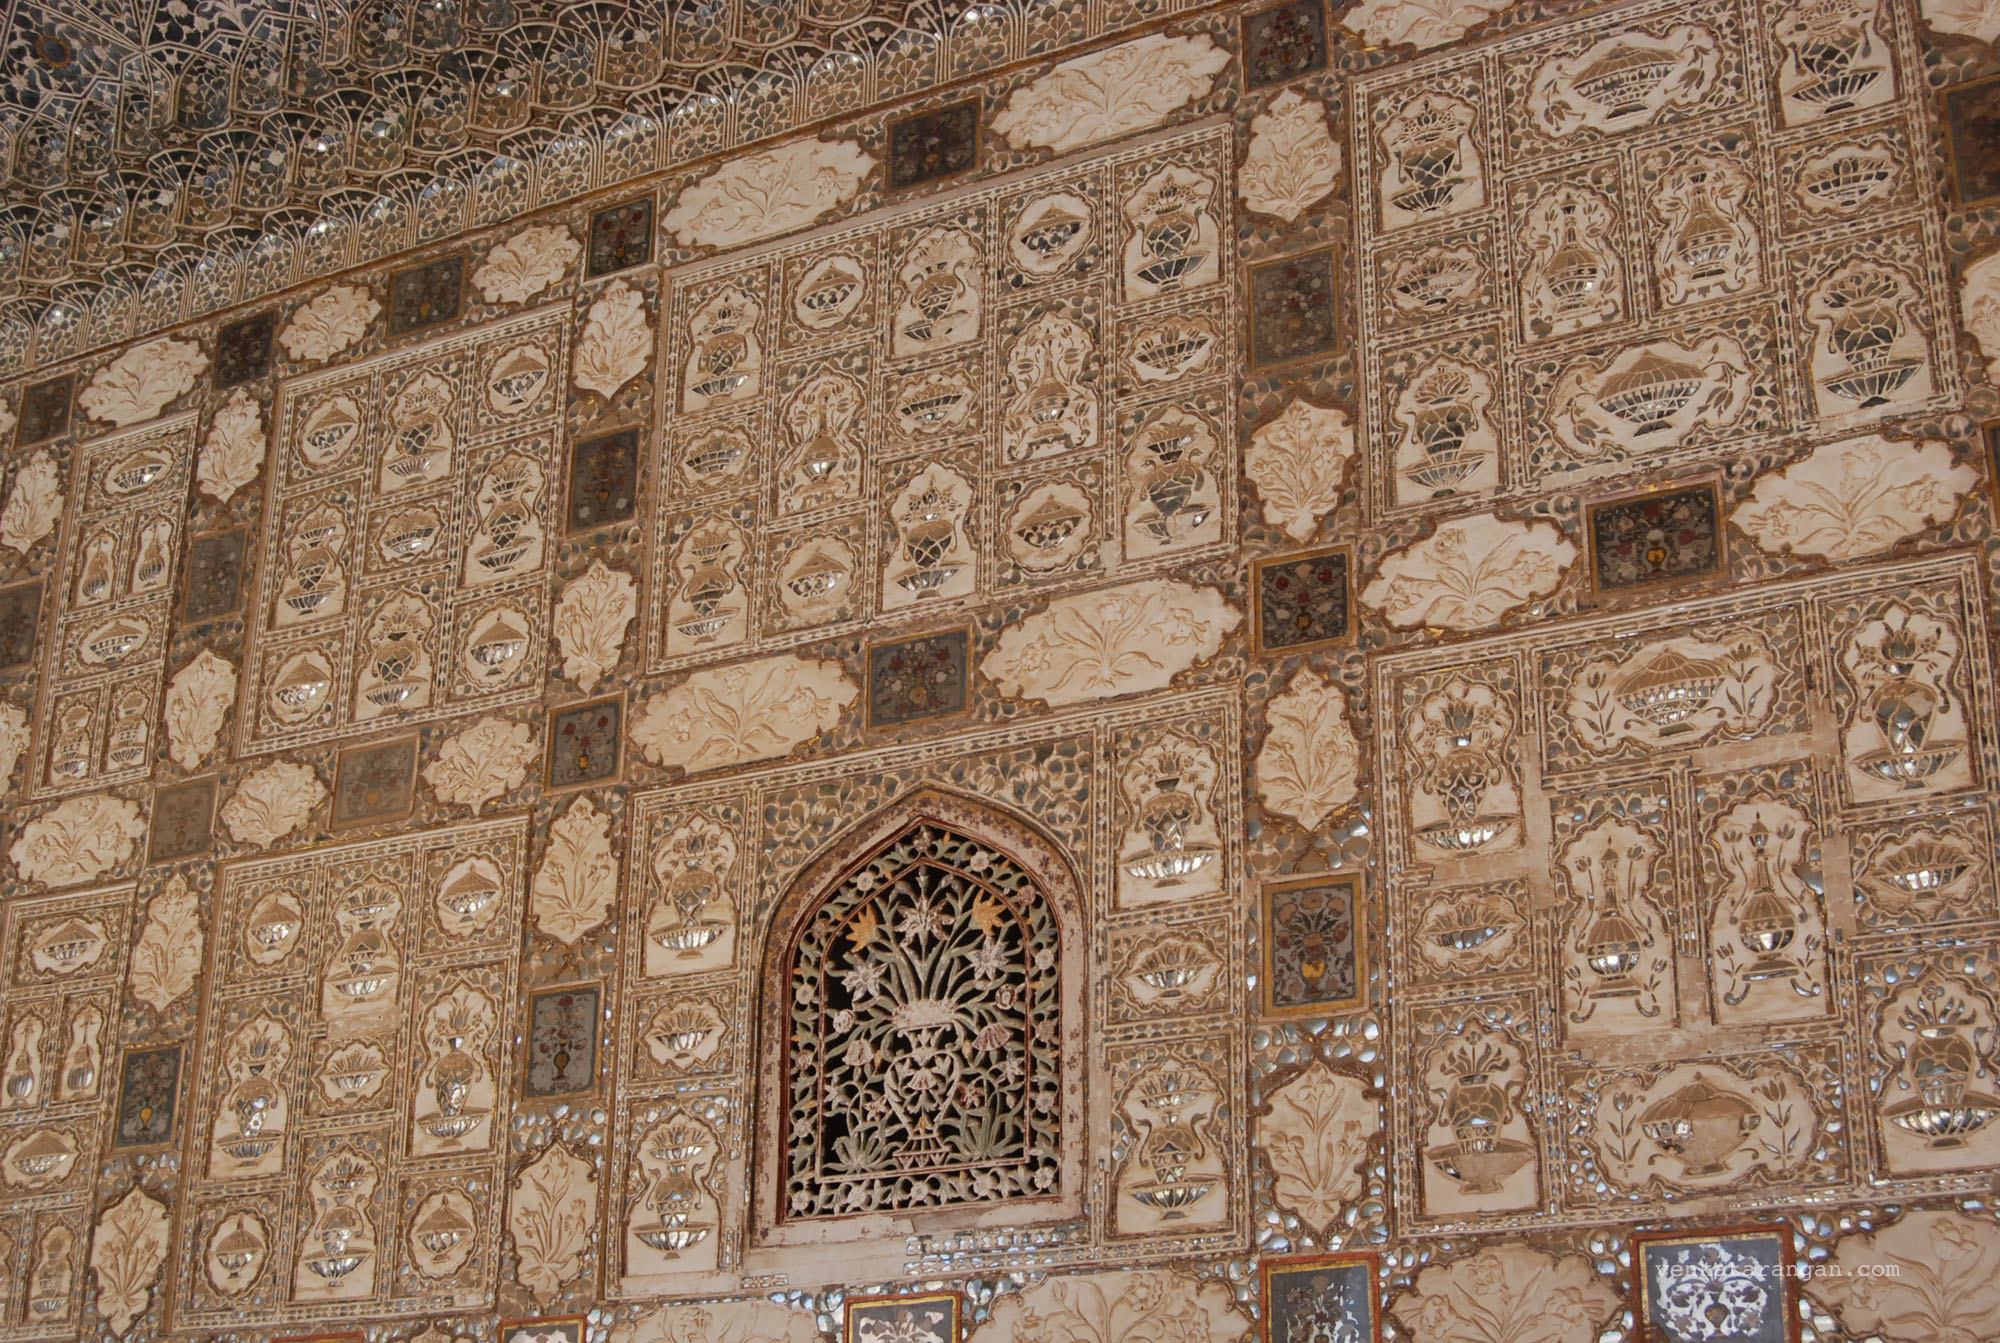 Sheesh Mahal (mirror palace)